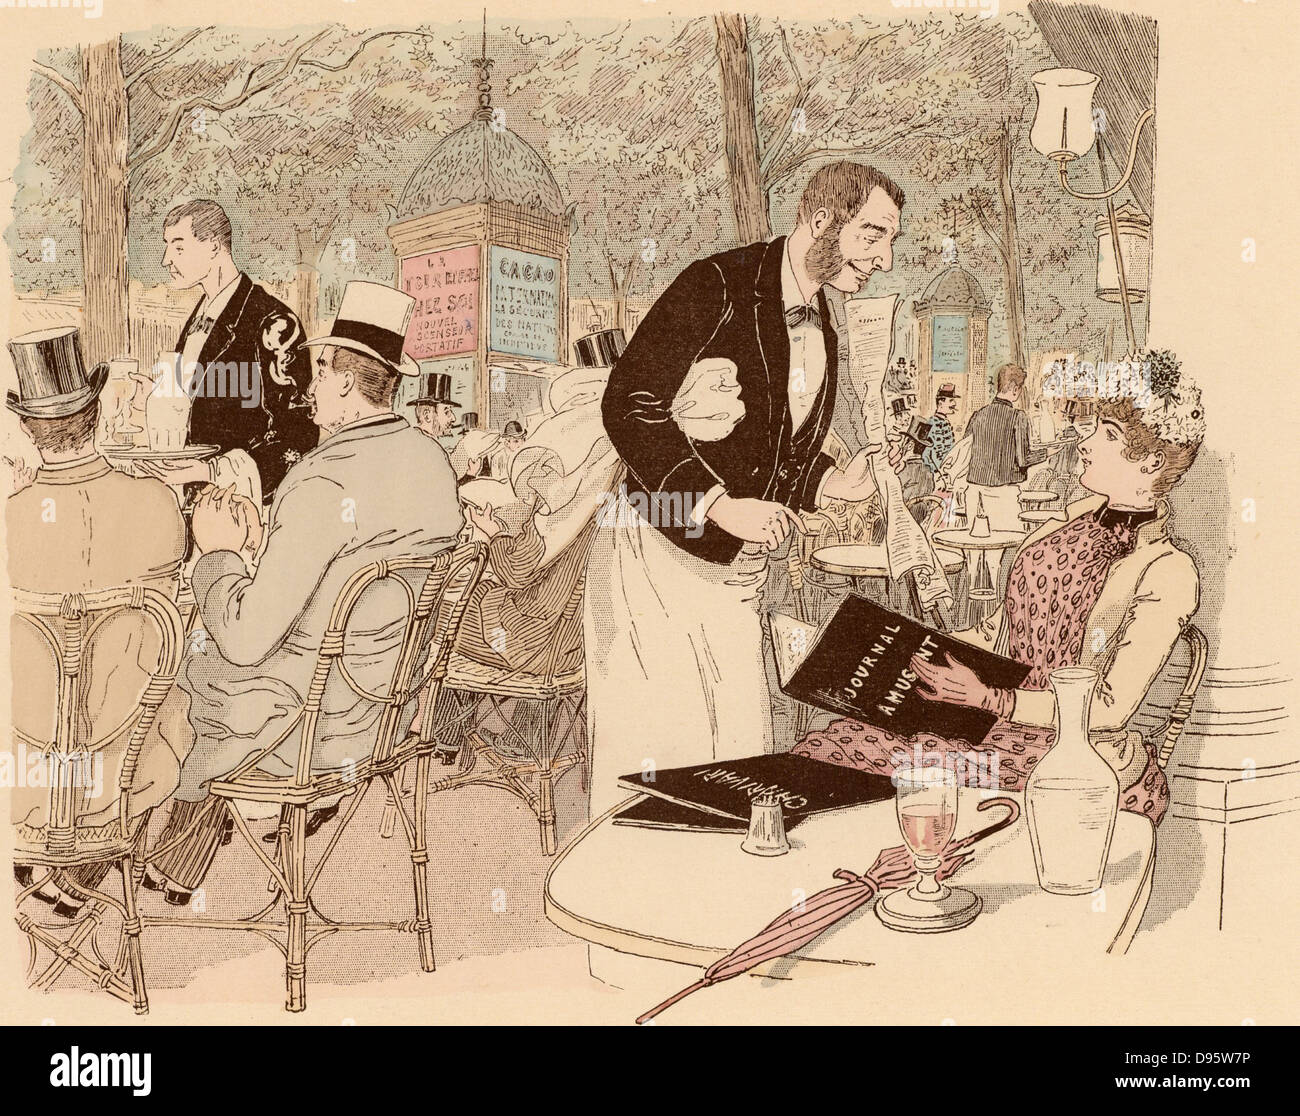 Die Erholung auf der Terrasse von einem Pariser Café. Paris, Frankreich. Von "Paris Brillant' von 'Mars' (Maurice Bonvoisin - 1849-1912) (Paris, c 1890). Lithographie. Stockfoto